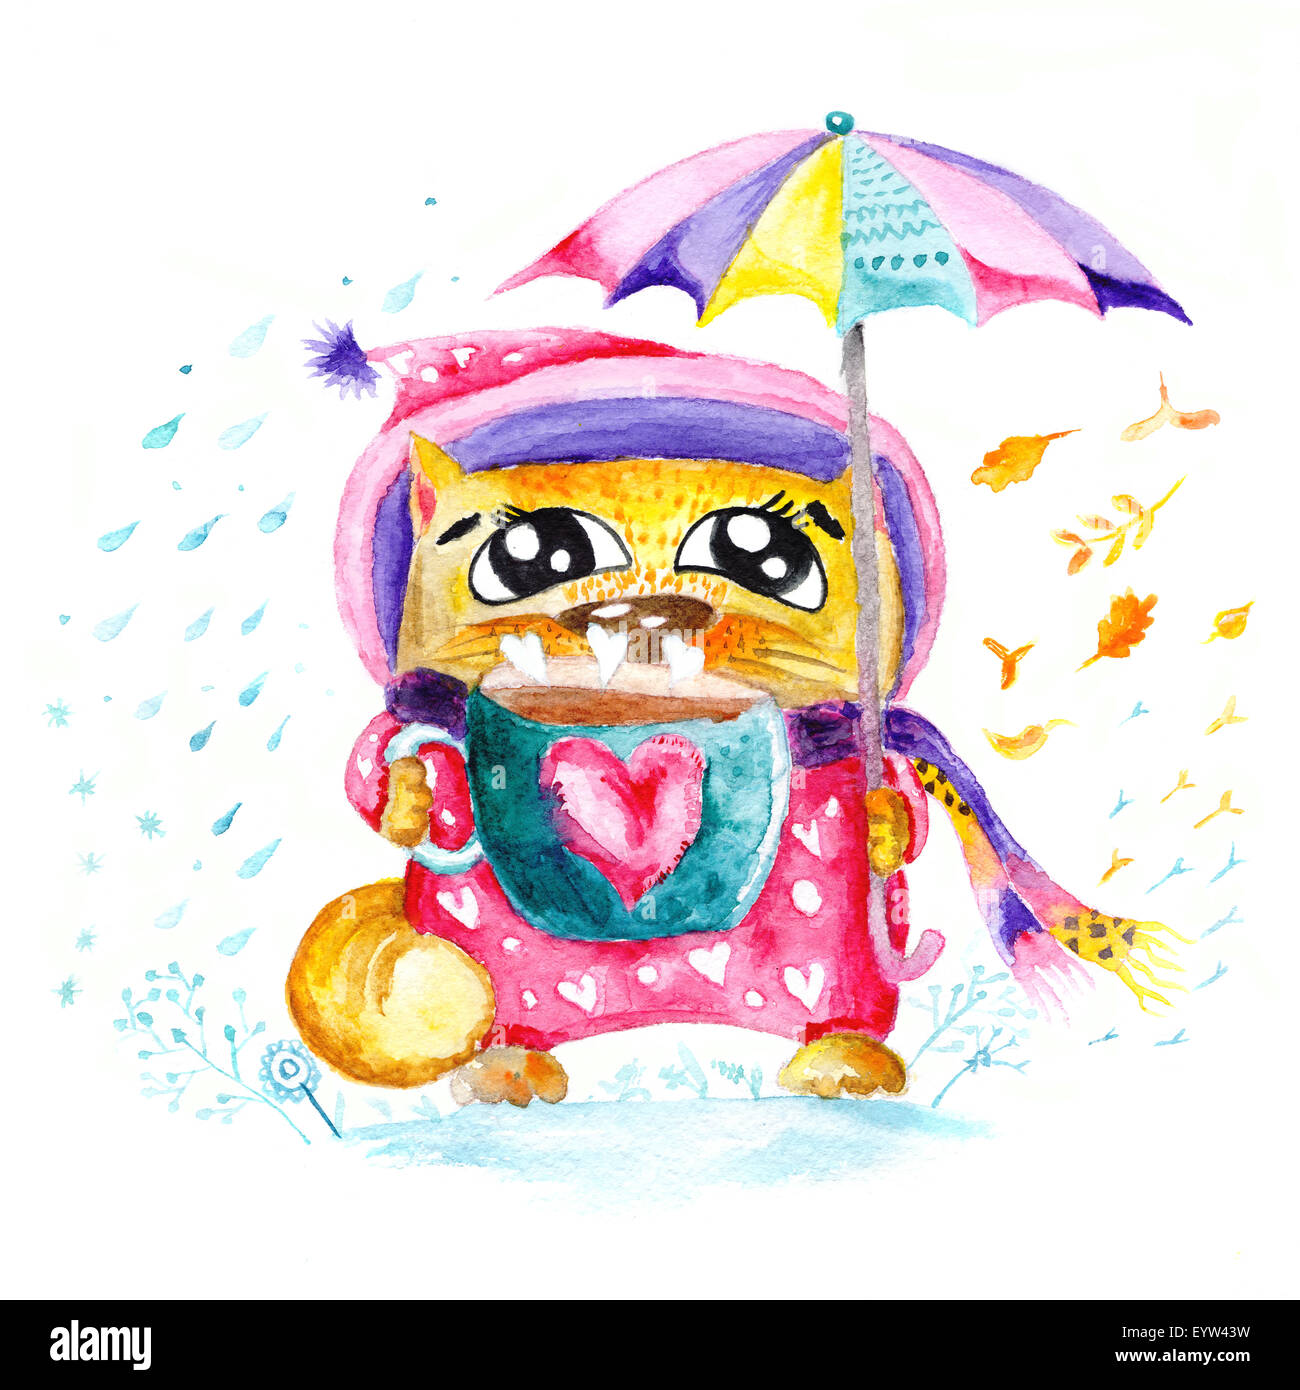 Kinder Illustration Malerei mit Kitty hält eine Tasse Tee und Regenschirm mit Herz Liebe Form Stockfoto